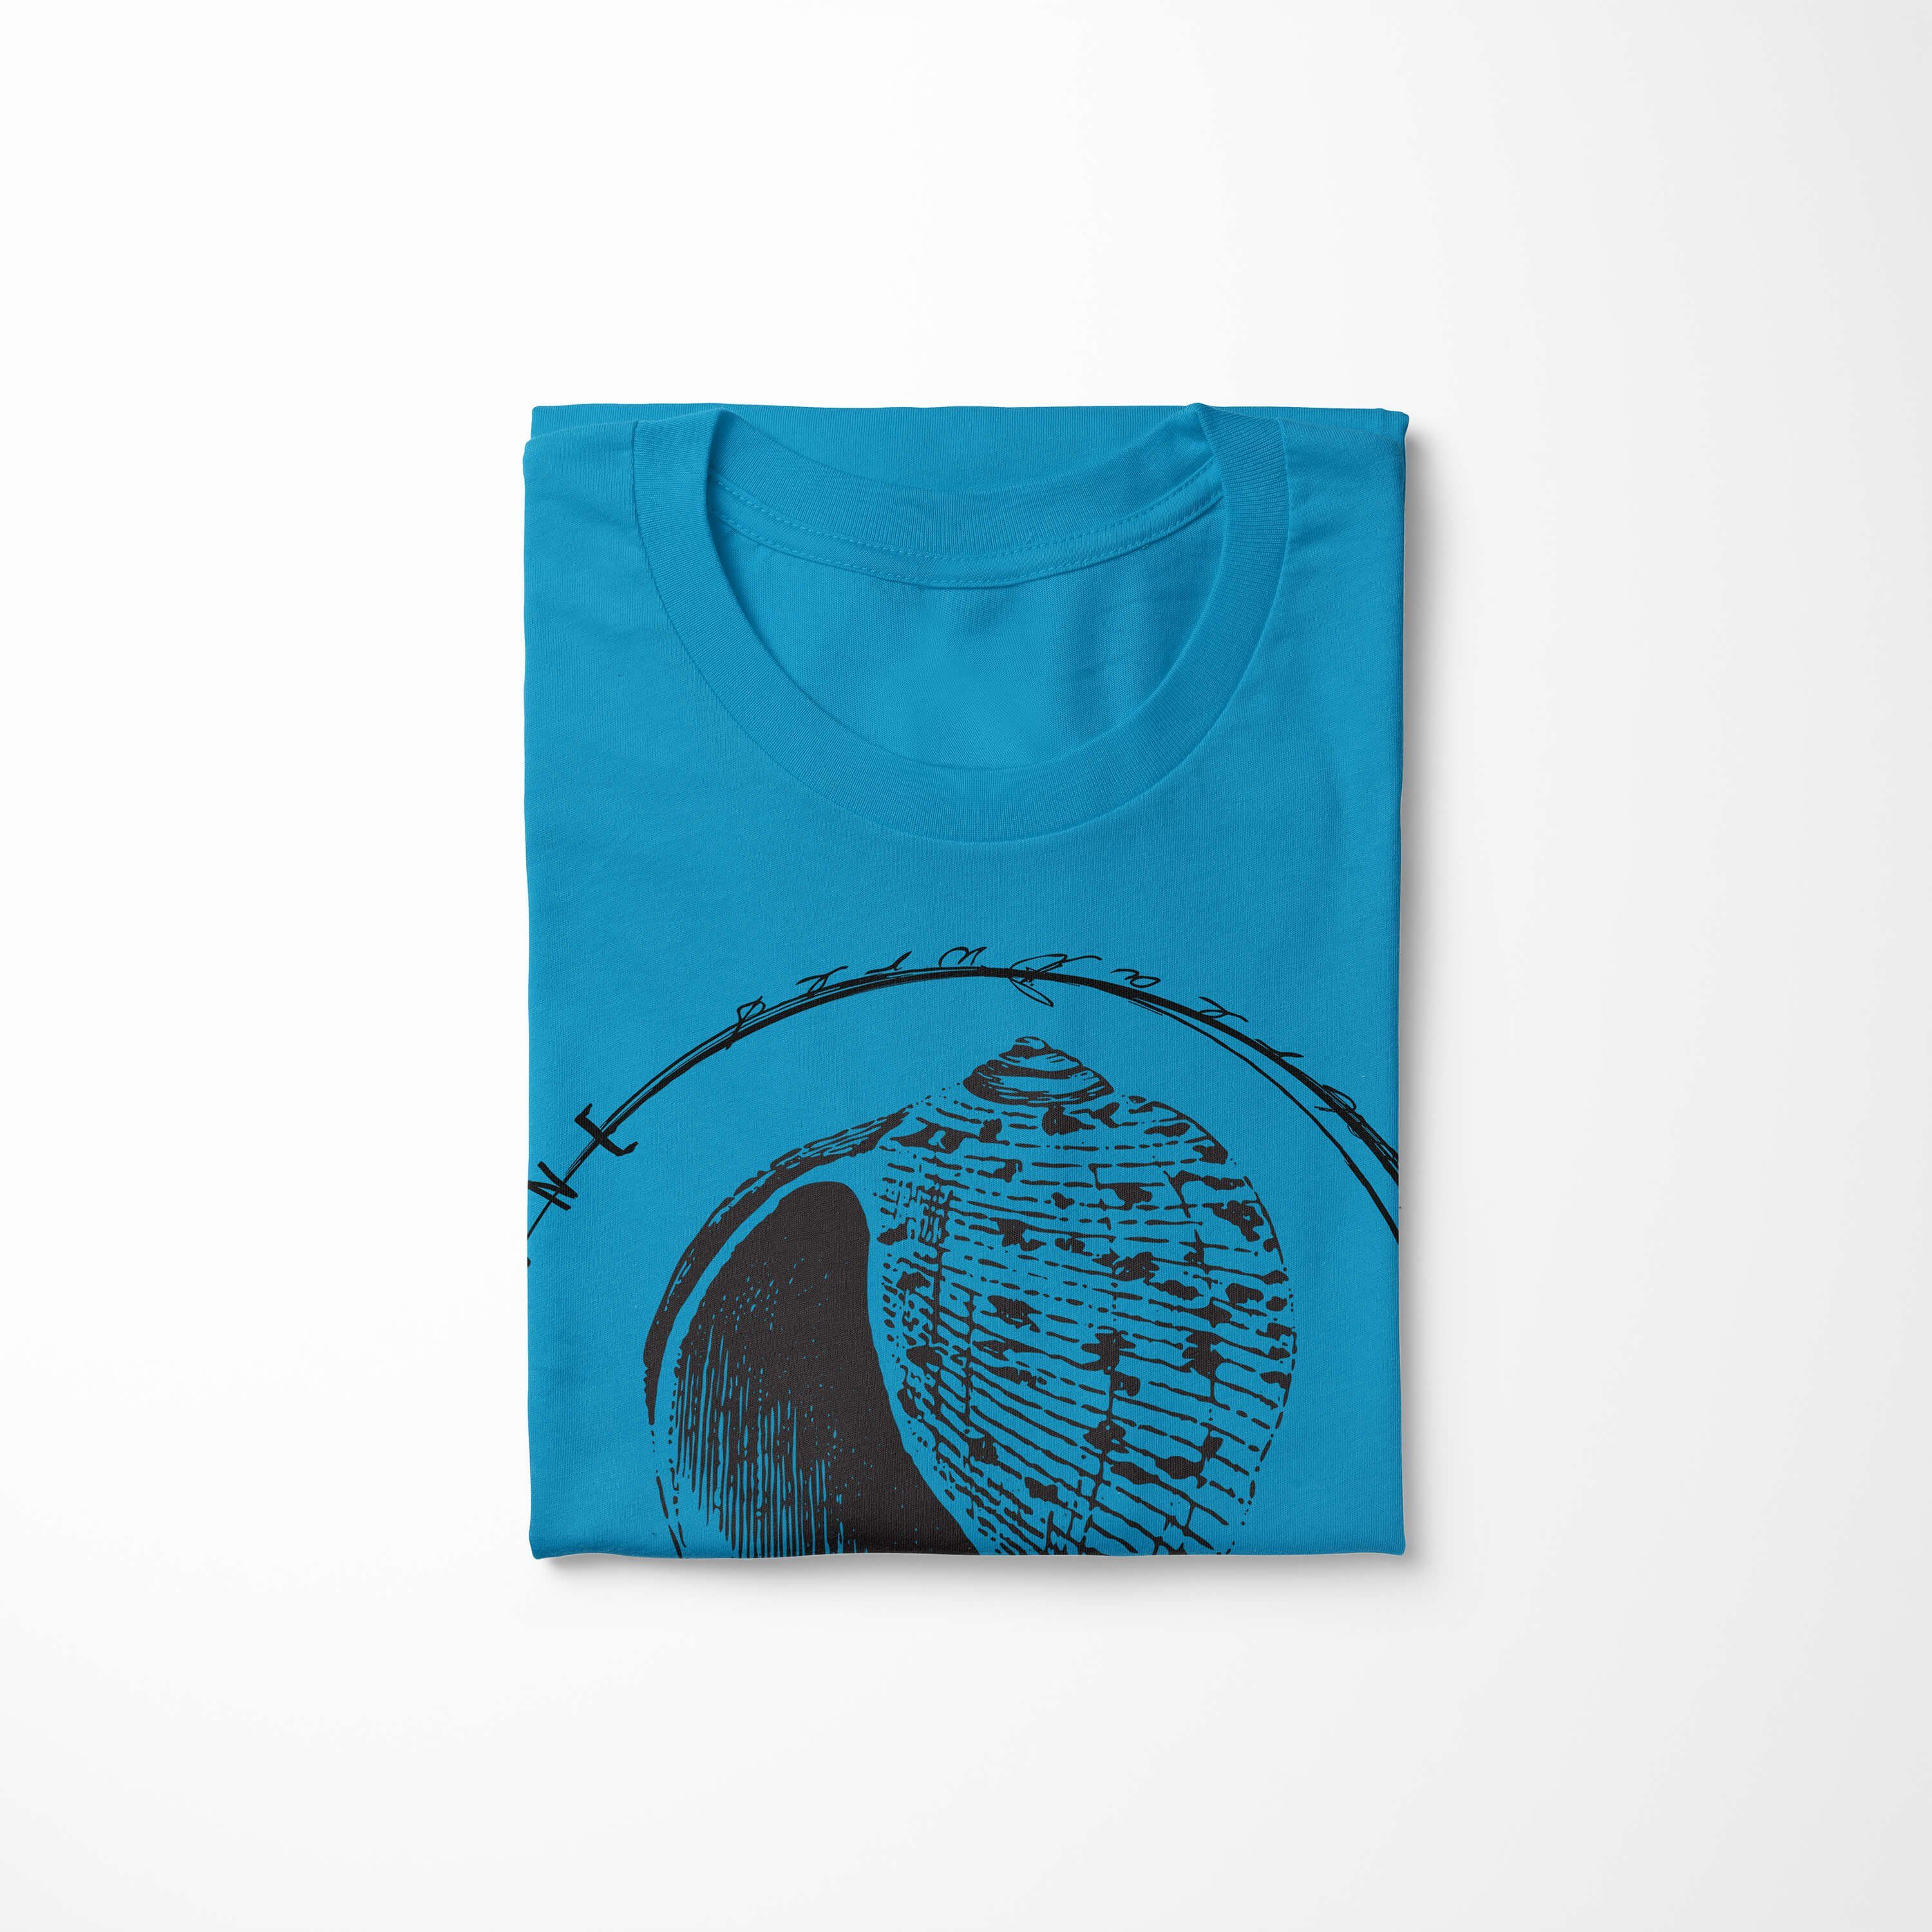 Fische Tiefsee T-Shirt sportlicher Sea Struktur - Schnitt feine und Sea / Serie: T-Shirt Atoll Creatures, Sinus 057 Art